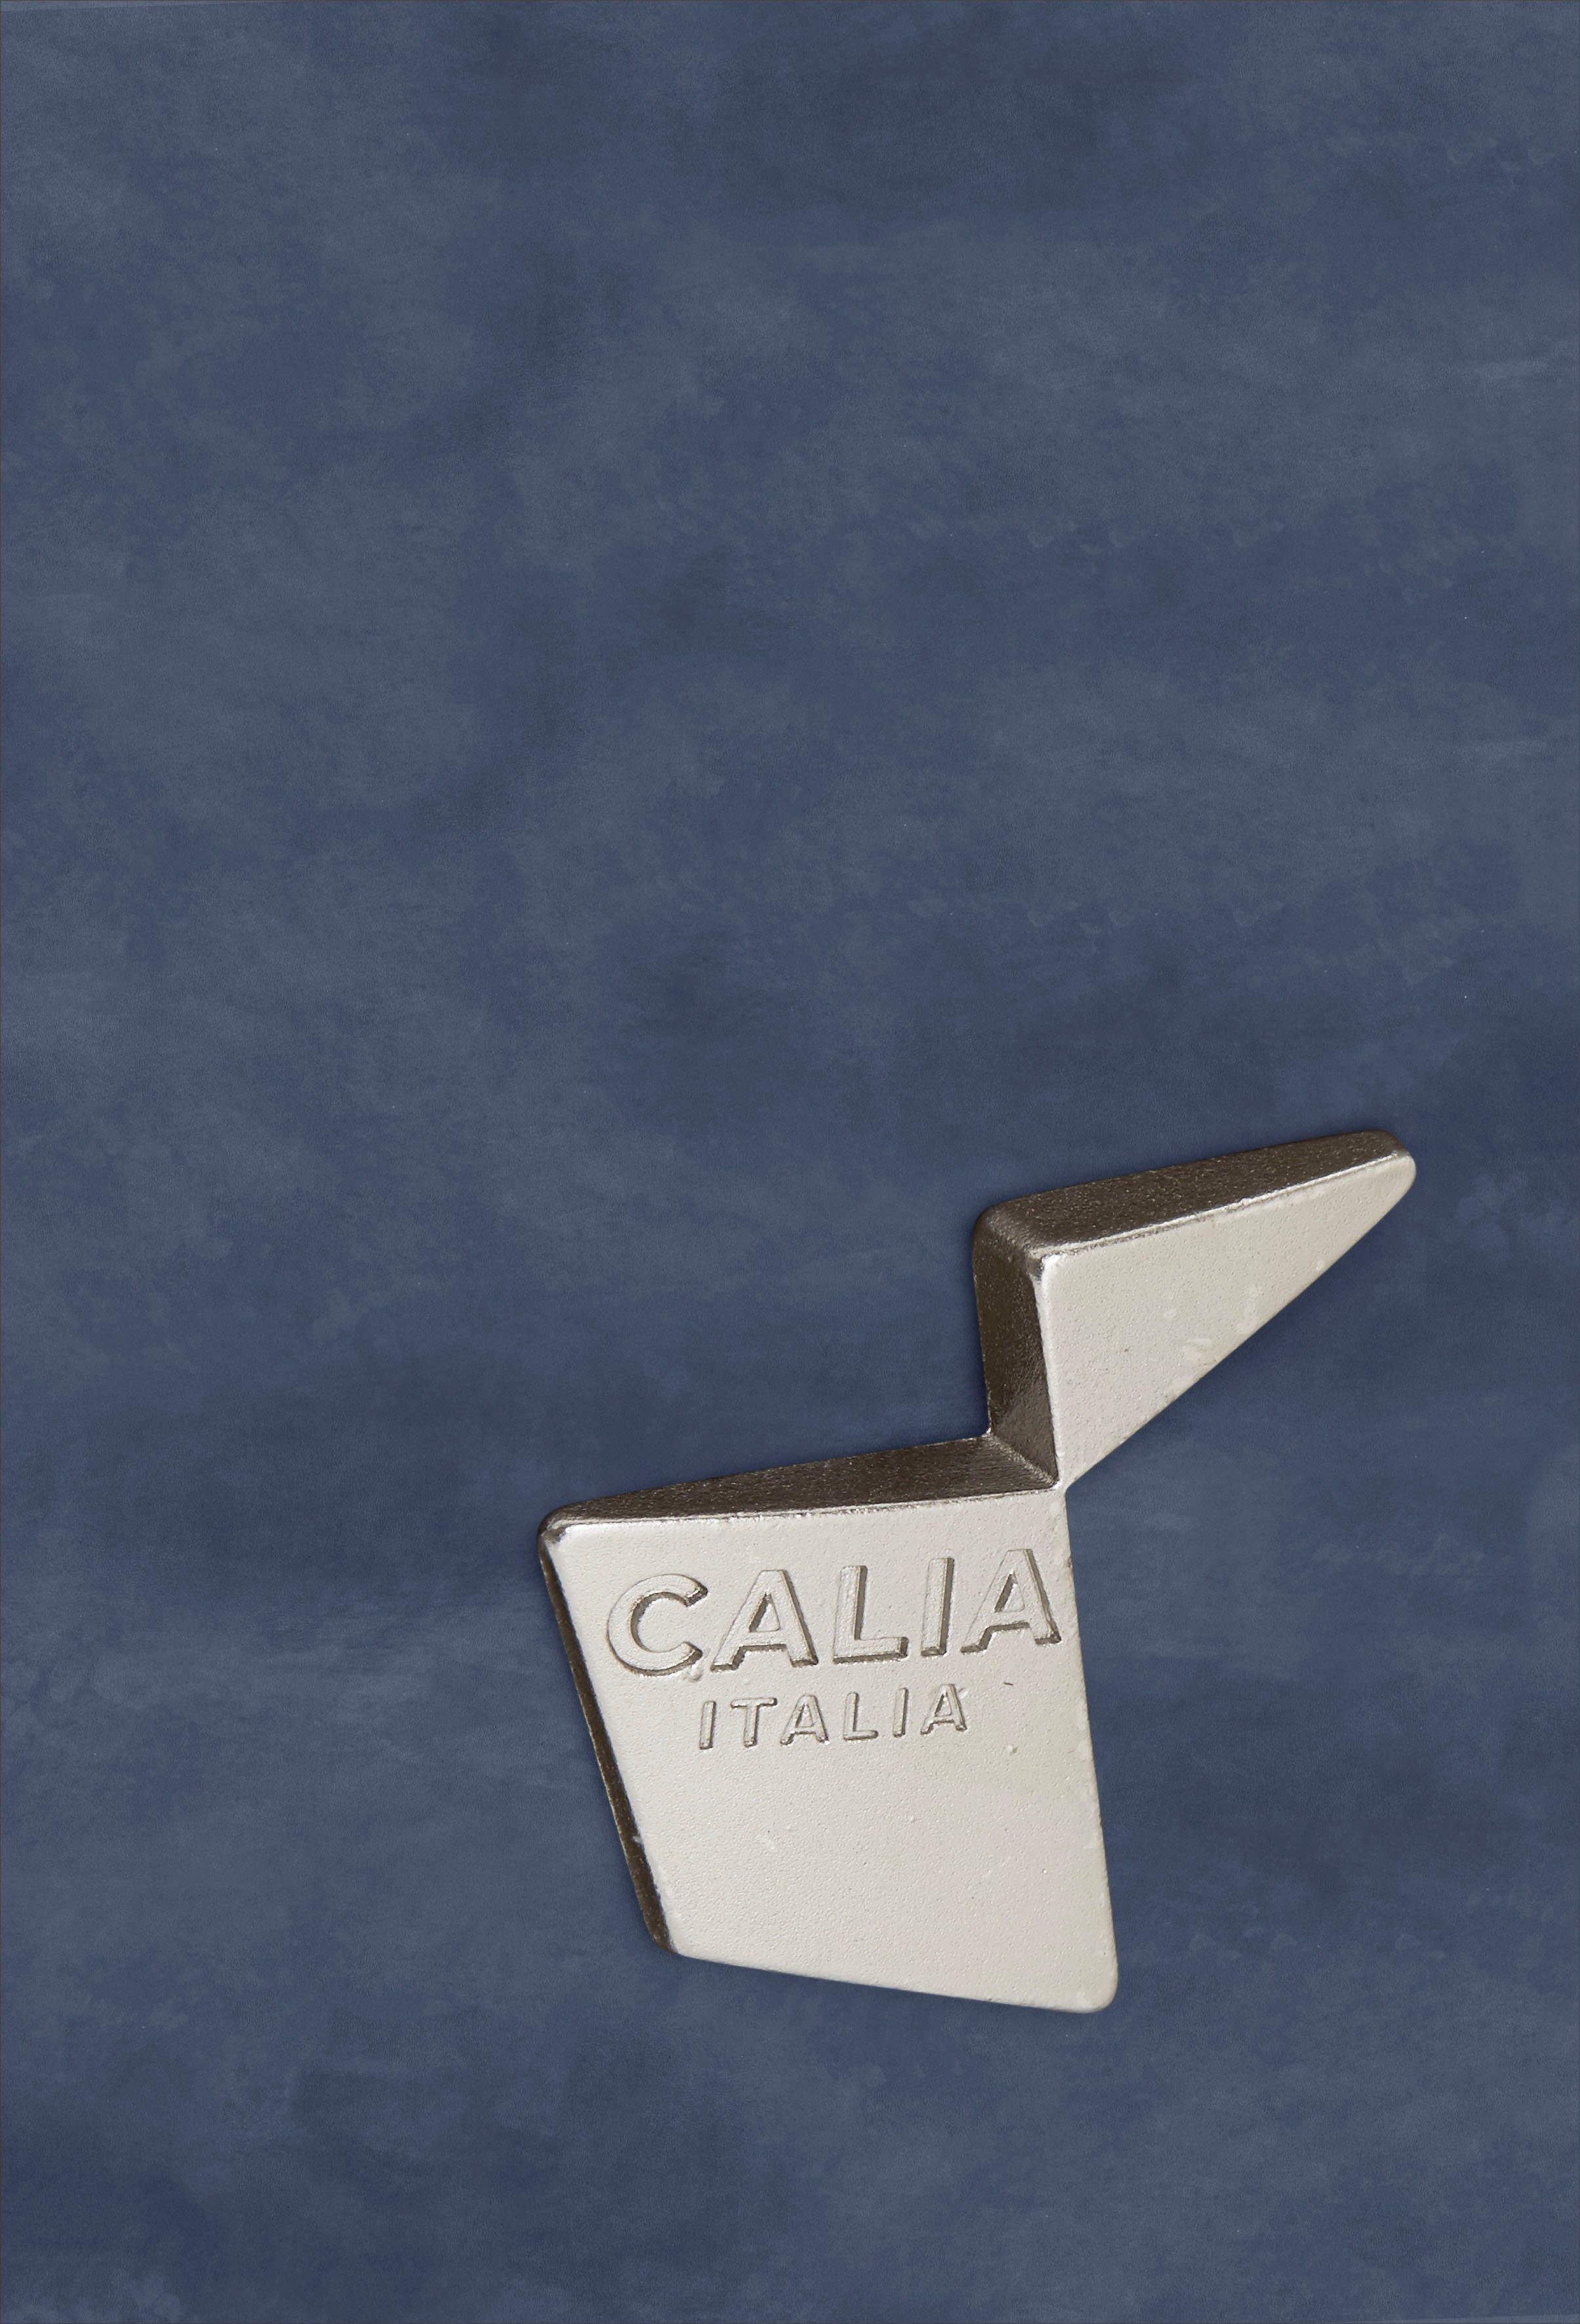 ITALIA Luxus-Microfaser Care CALIA Gaia, blue Ginevra Hydro Sessel mit